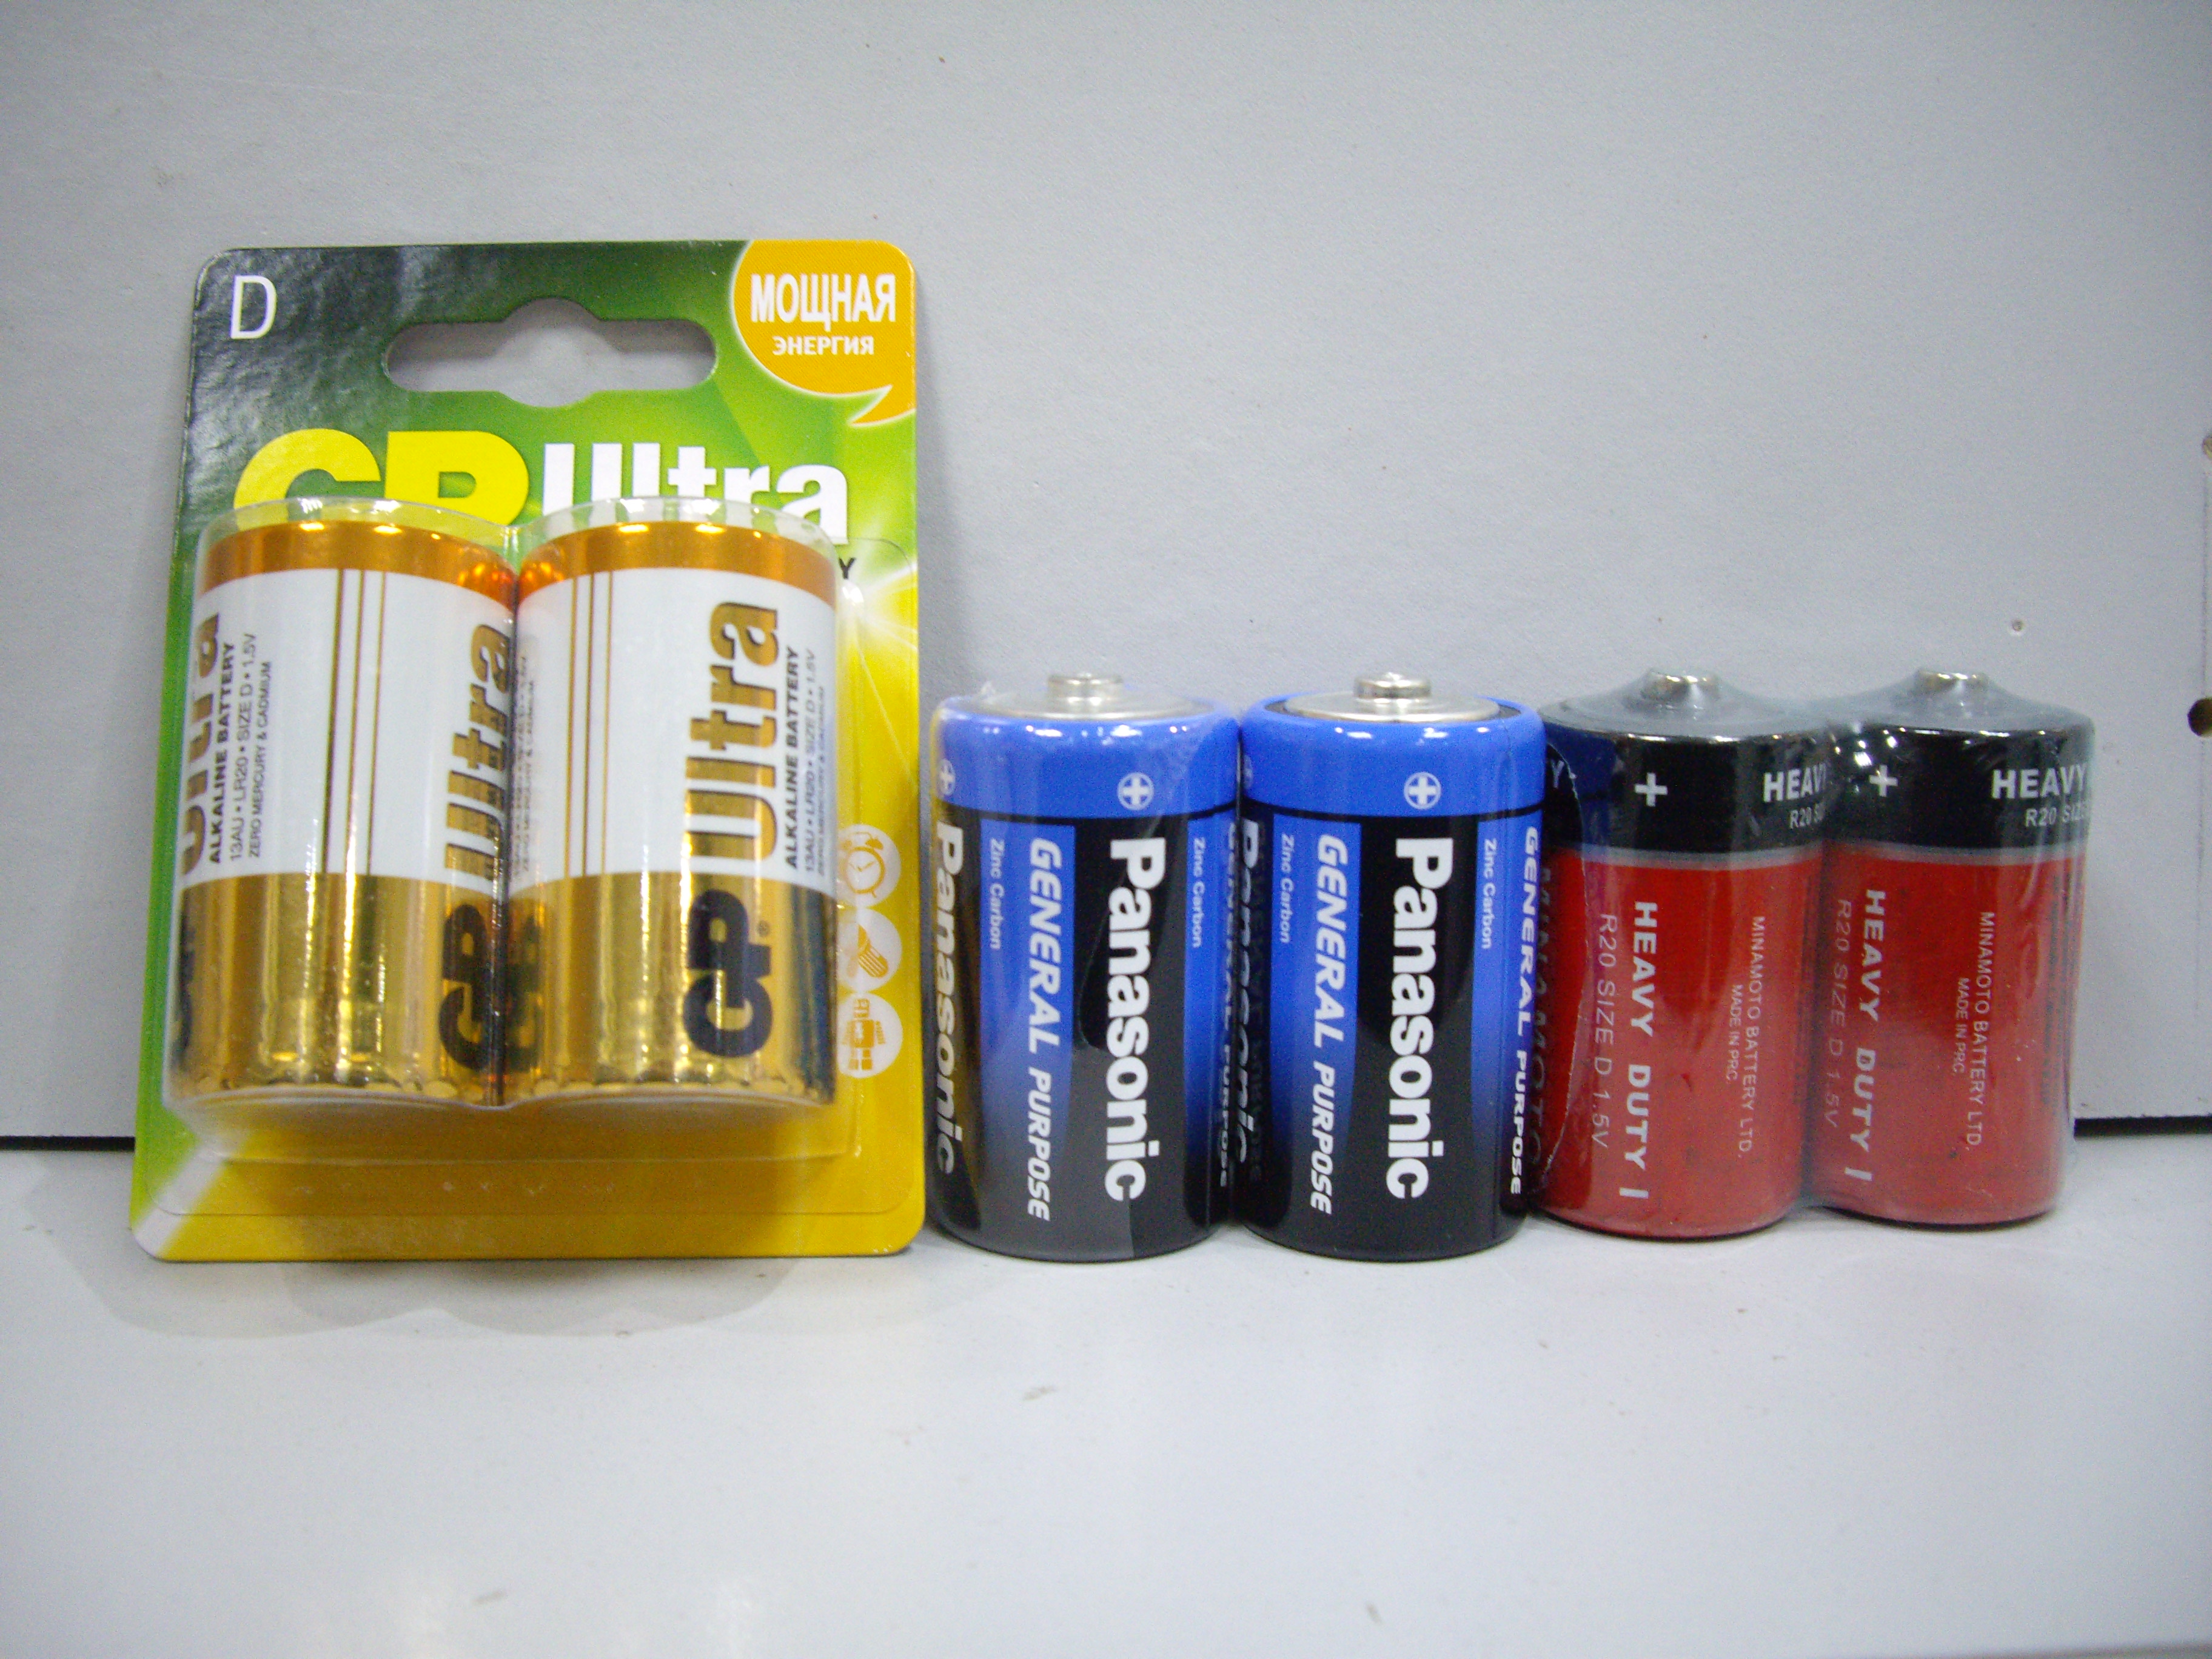 Батарейки R20, LR20(D)
Цена Minamoto R20(D) 30 р./шт.
Цена Panasonic R20(D) 50 р./шт.
Цена GP LR20(D) 130 р./шт. 
(Алкалиновая)